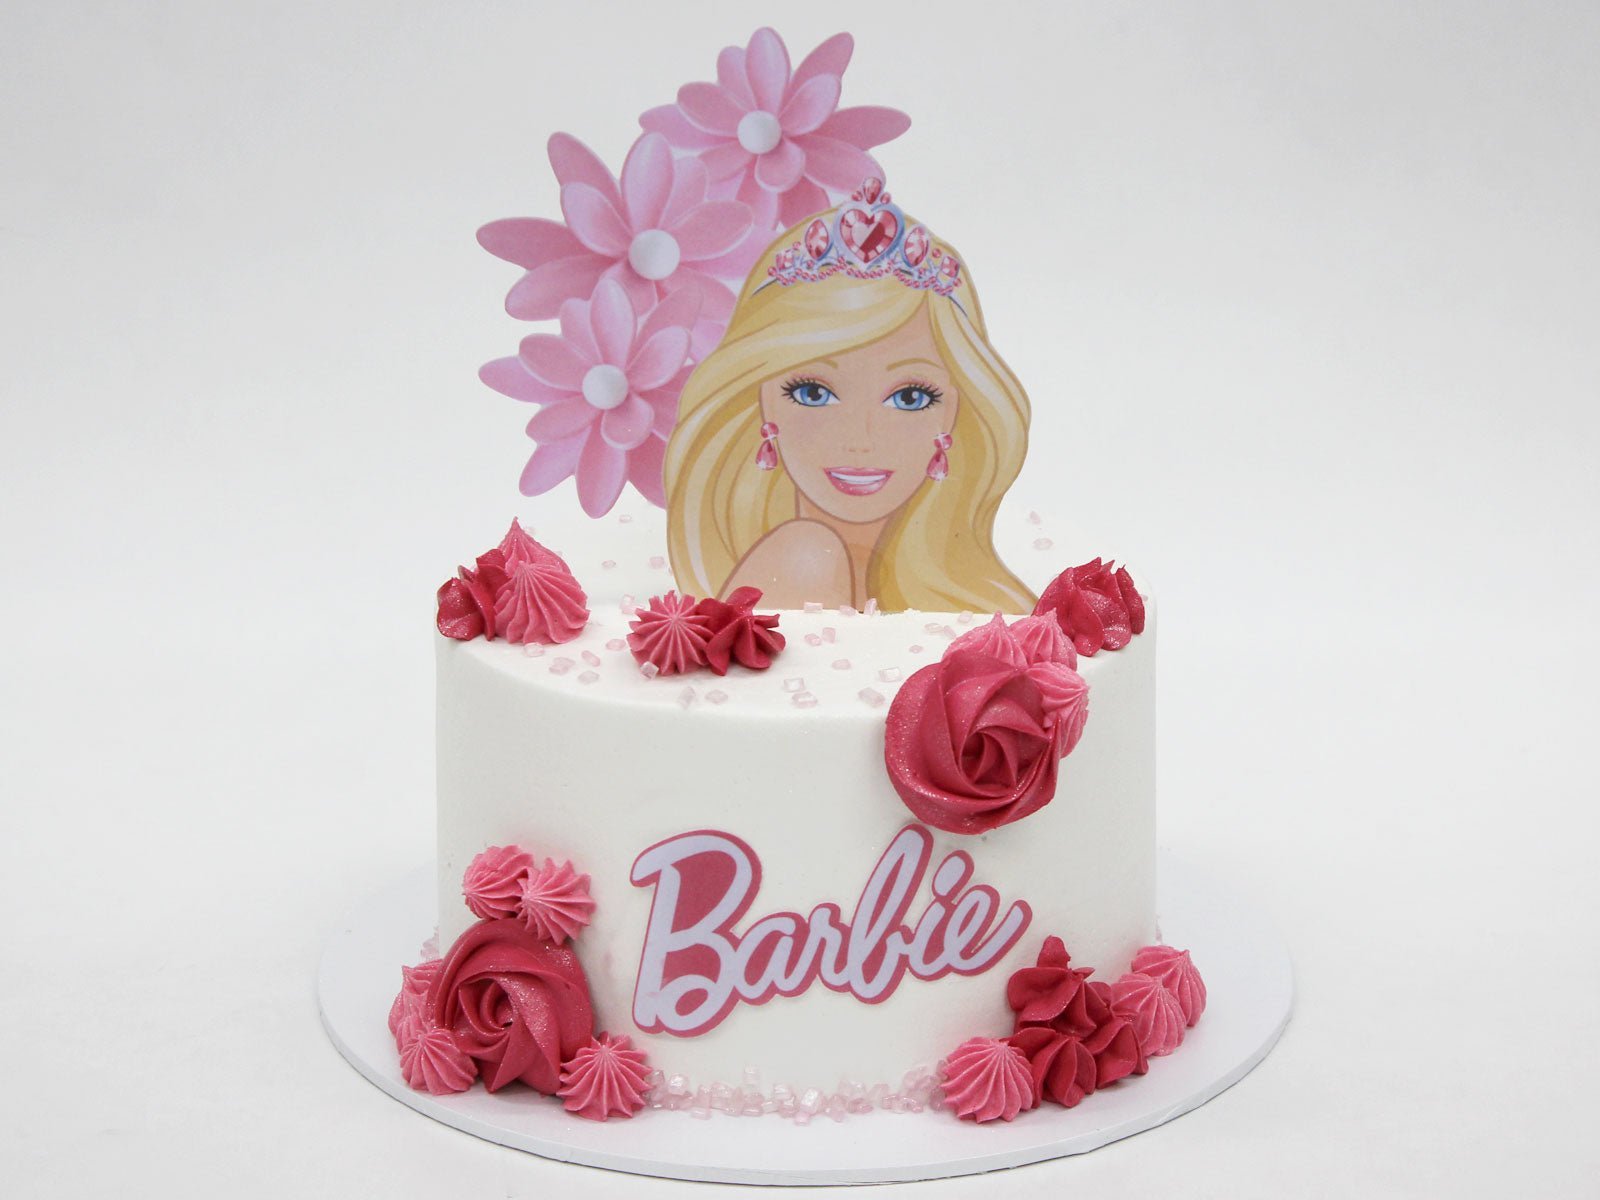 Barbie cake - Decorated Cake by tanita_al - CakesDecor